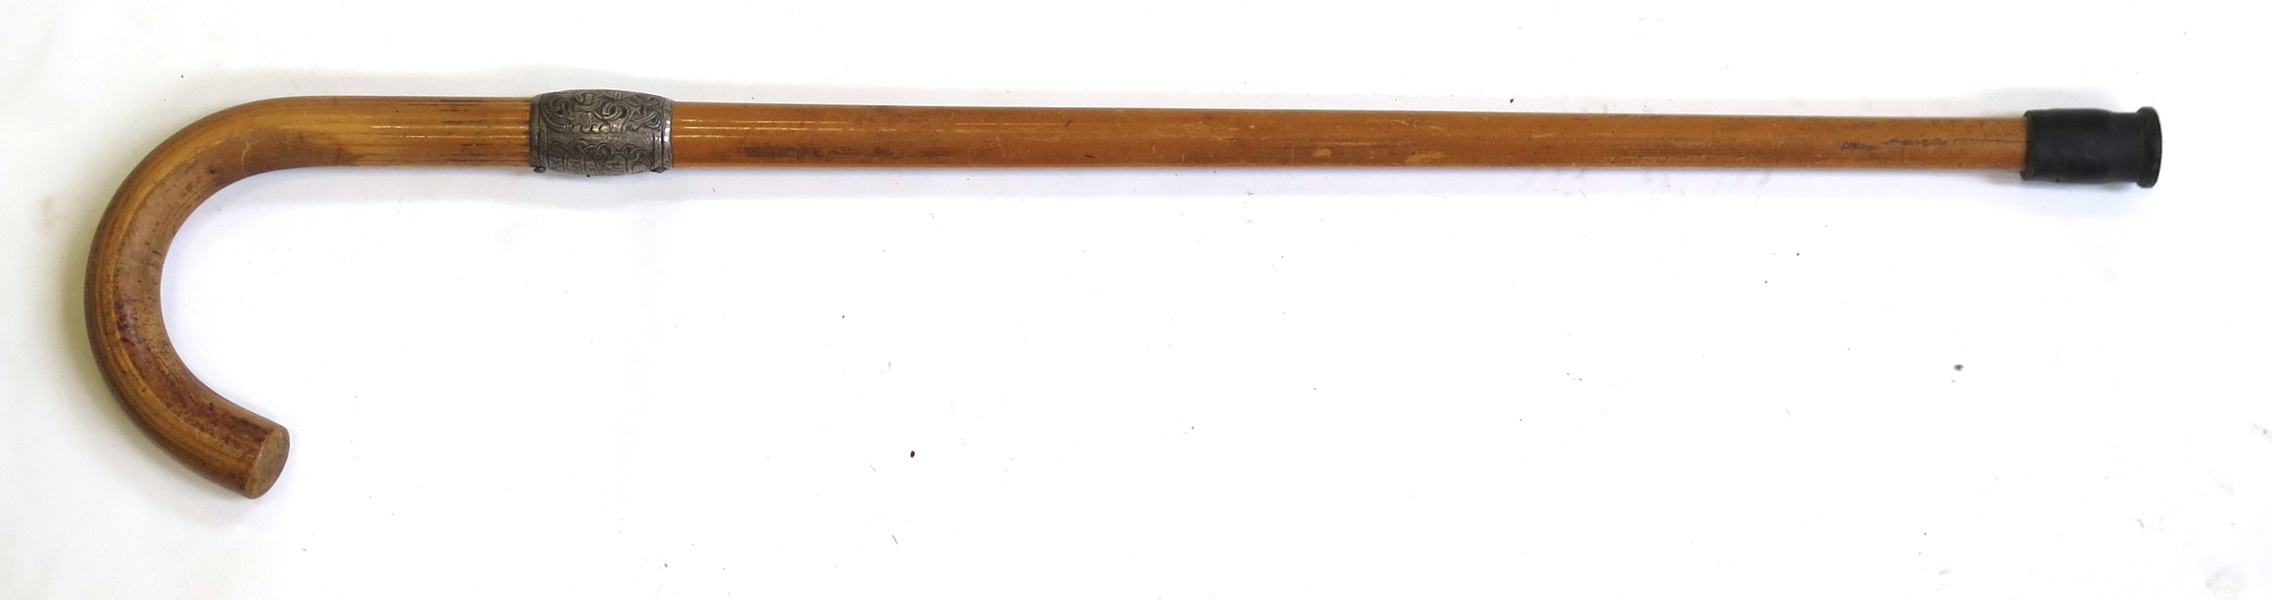 Käpp, bambu med silverbeslag, dekor av runor mm efter original på Jellingestenen,_11372a_8d94b59e9e4f243_lg.jpeg